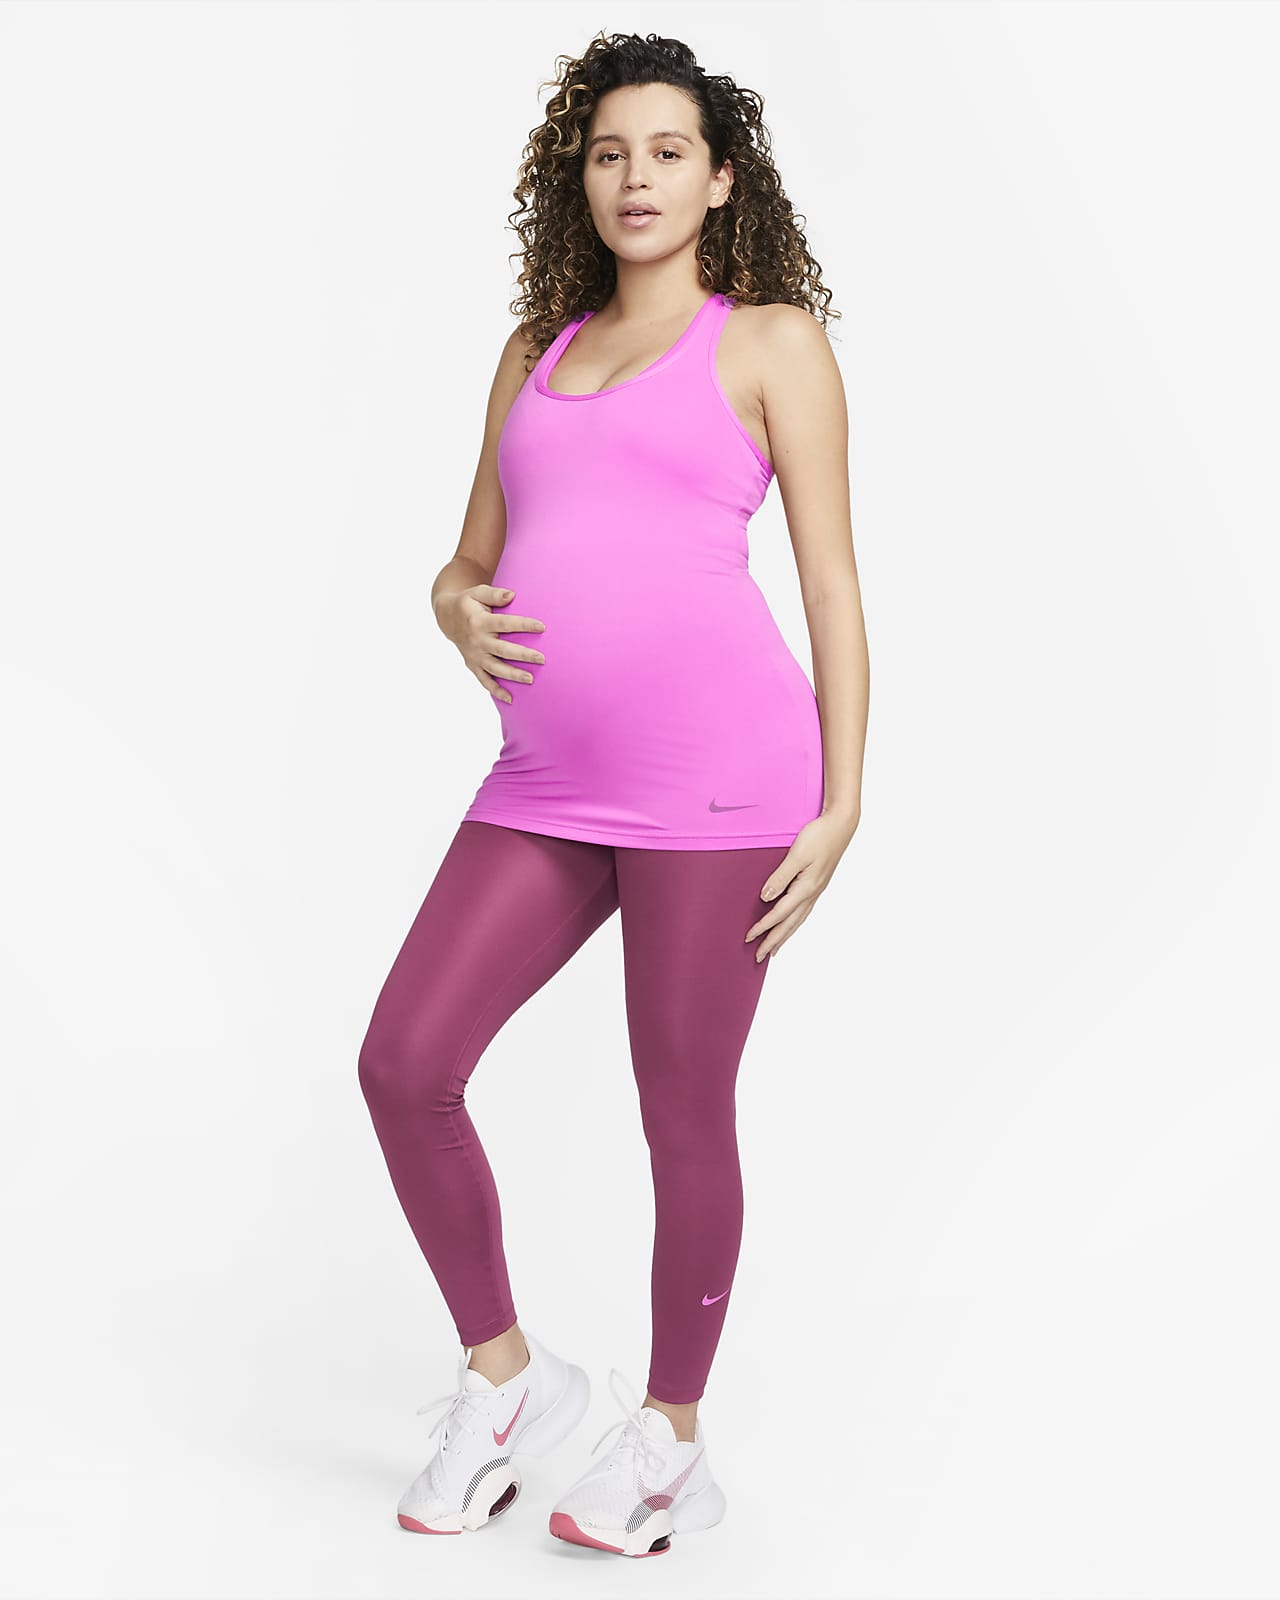 Women's Nike Maternity One High Rise Leggings